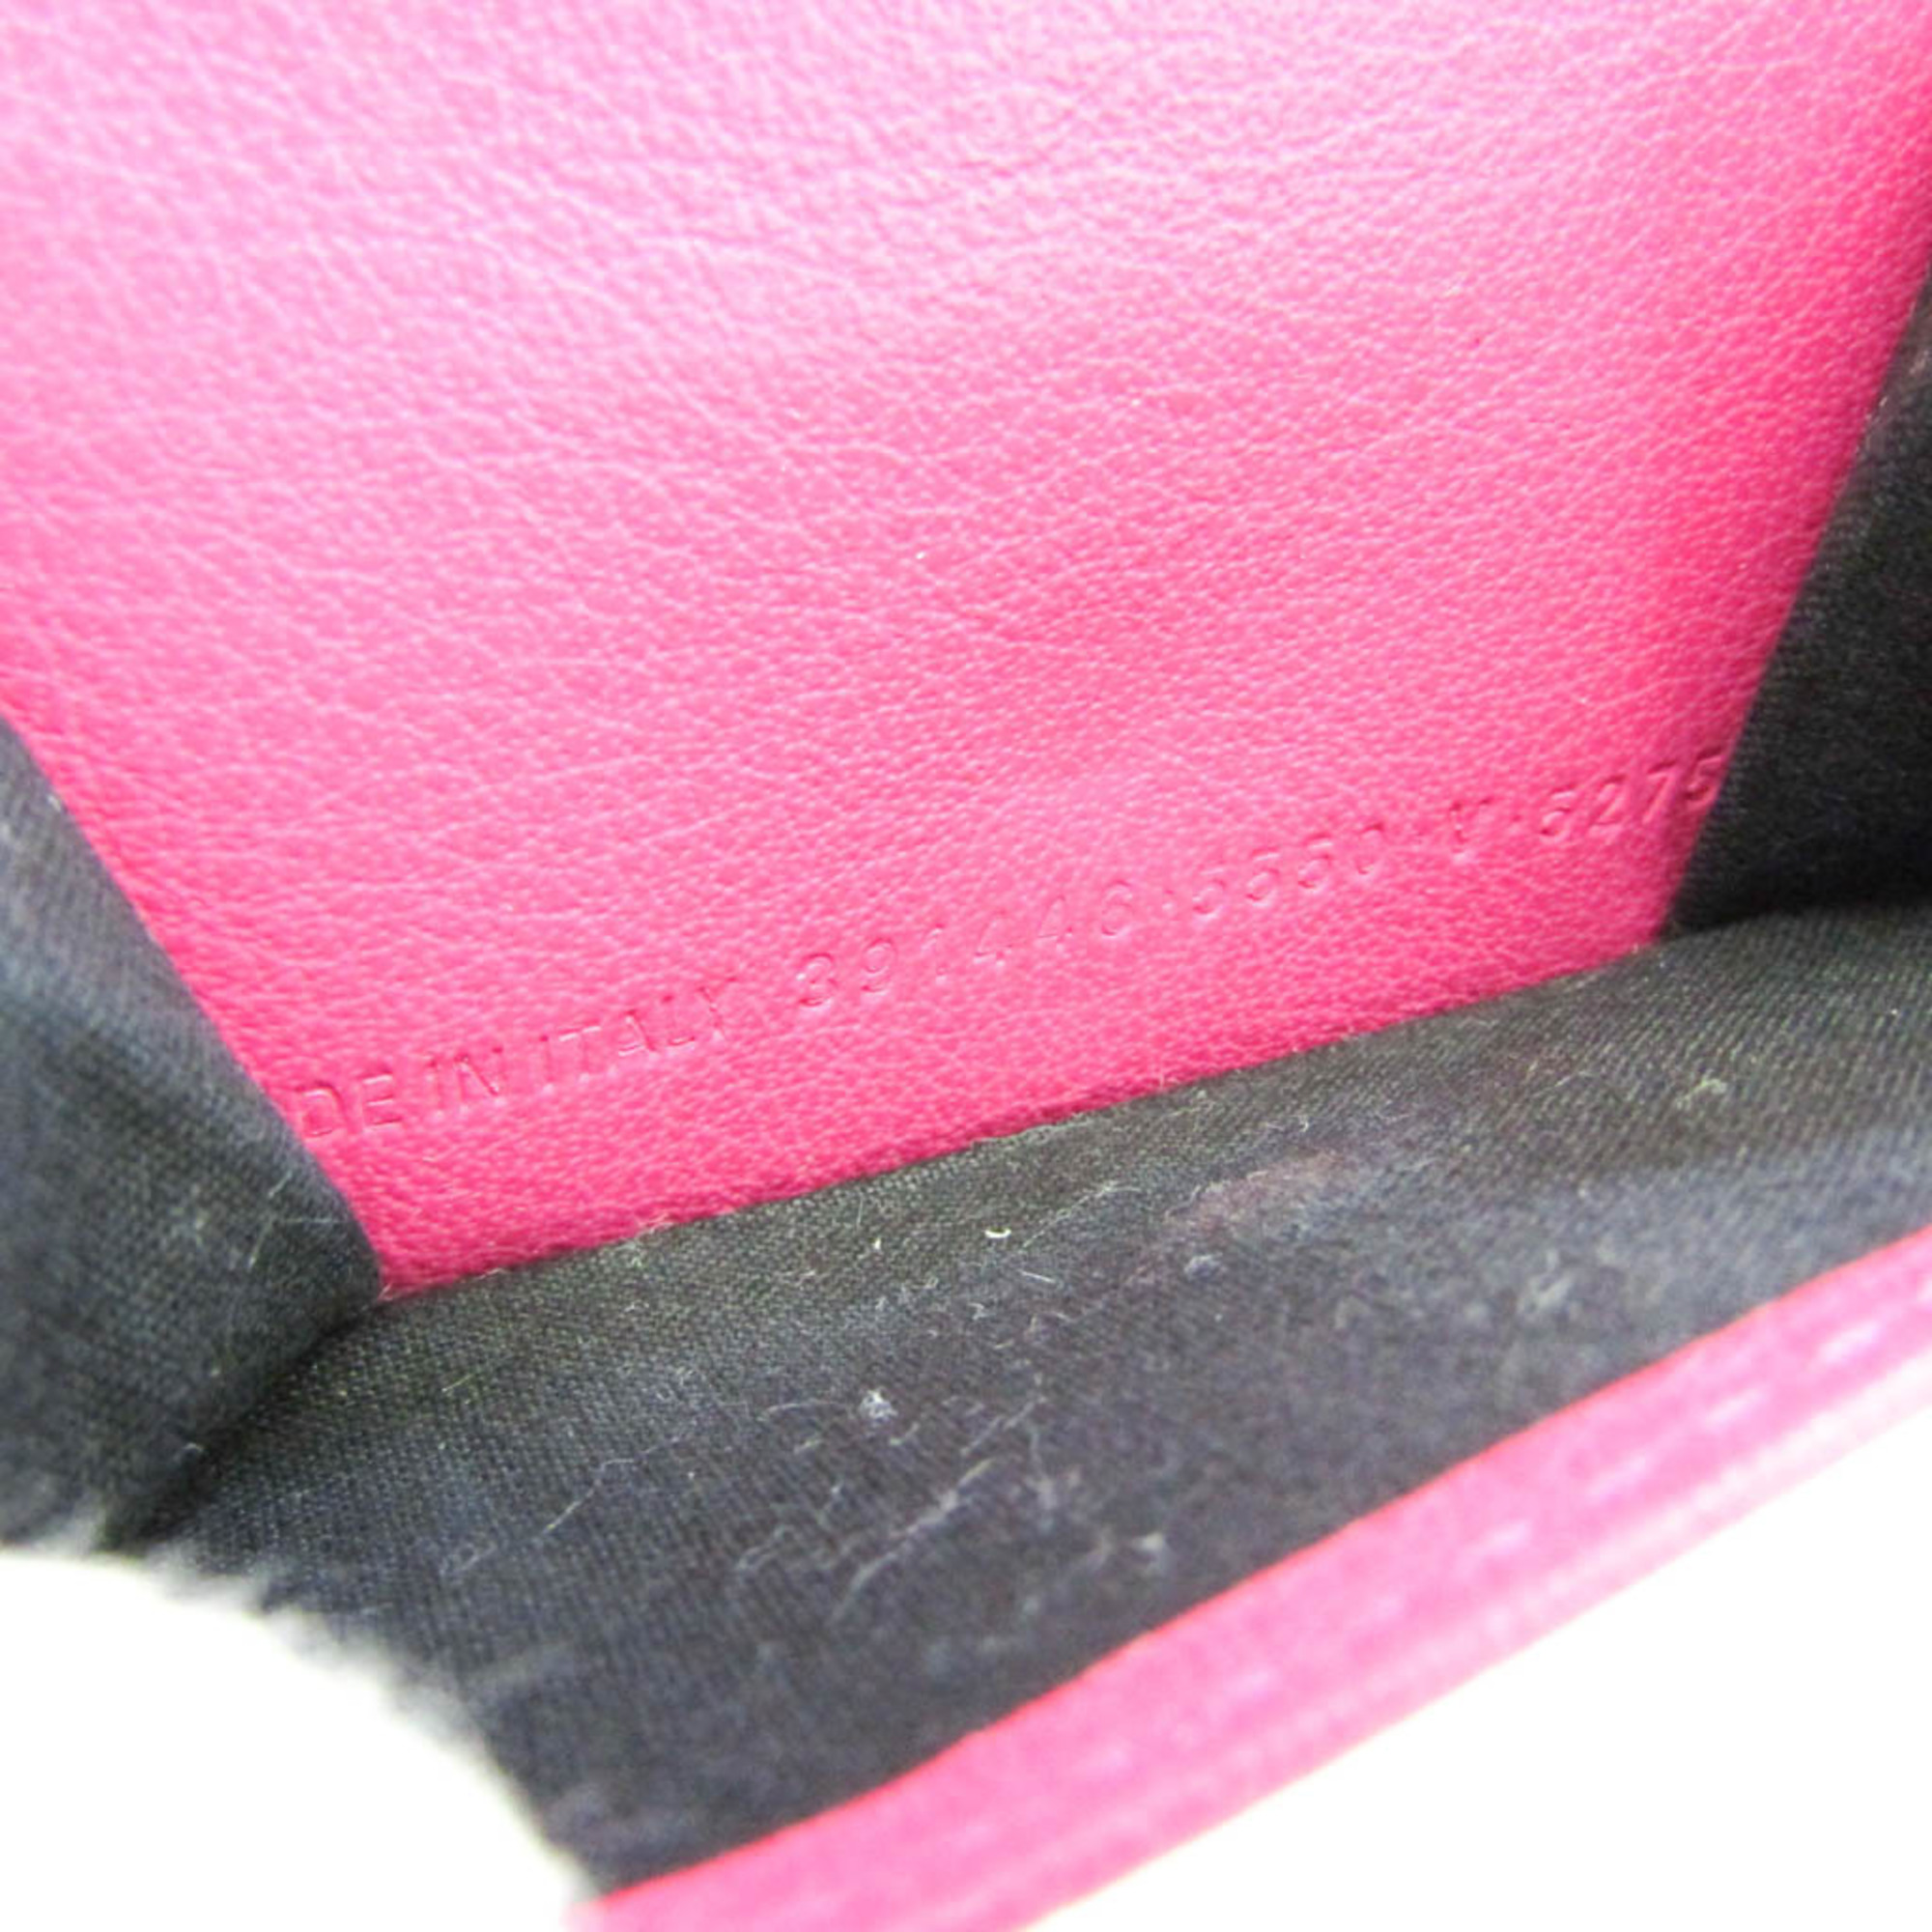 バレンシアガ(Balenciaga) ペーパーミニ 391446 レディース レザー 財布（三つ折り） ピンク